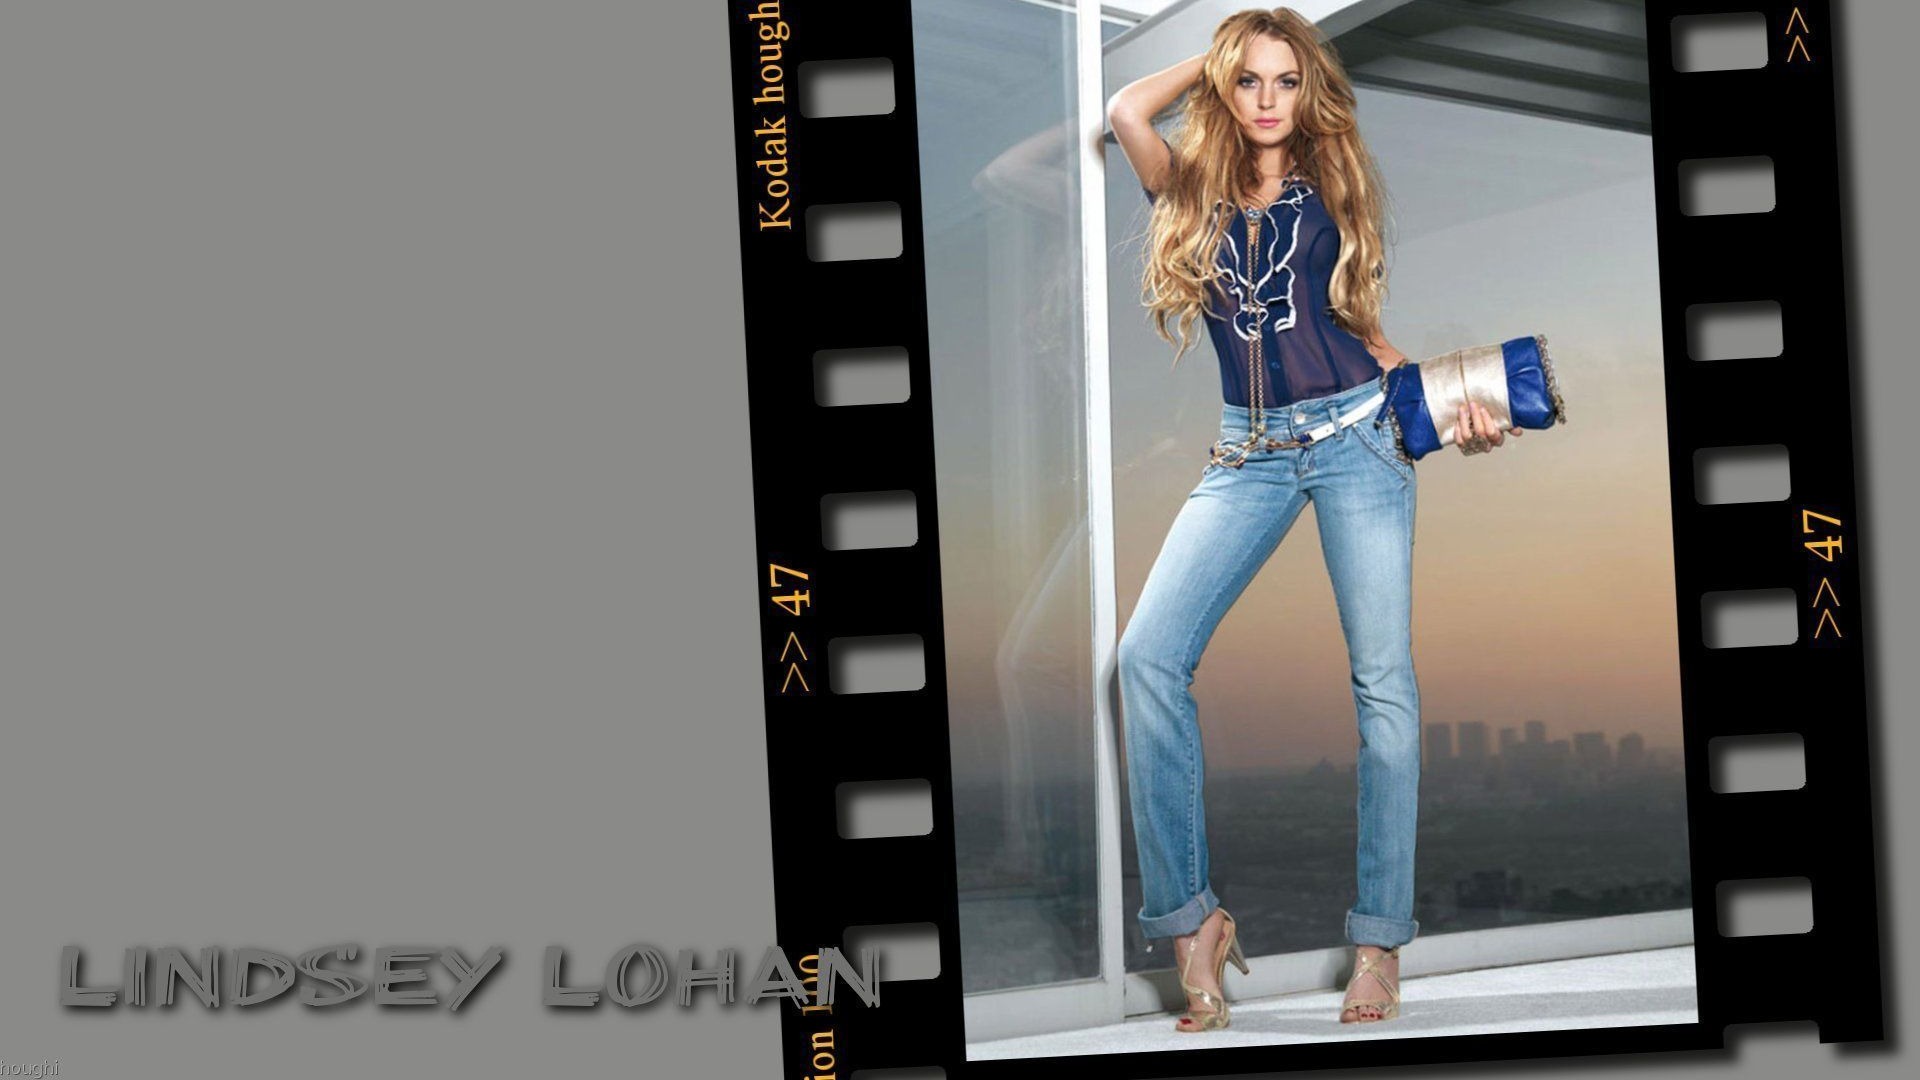 Lindsay Lohan 林賽·羅韓 美女壁紙 #12 - 1920x1080